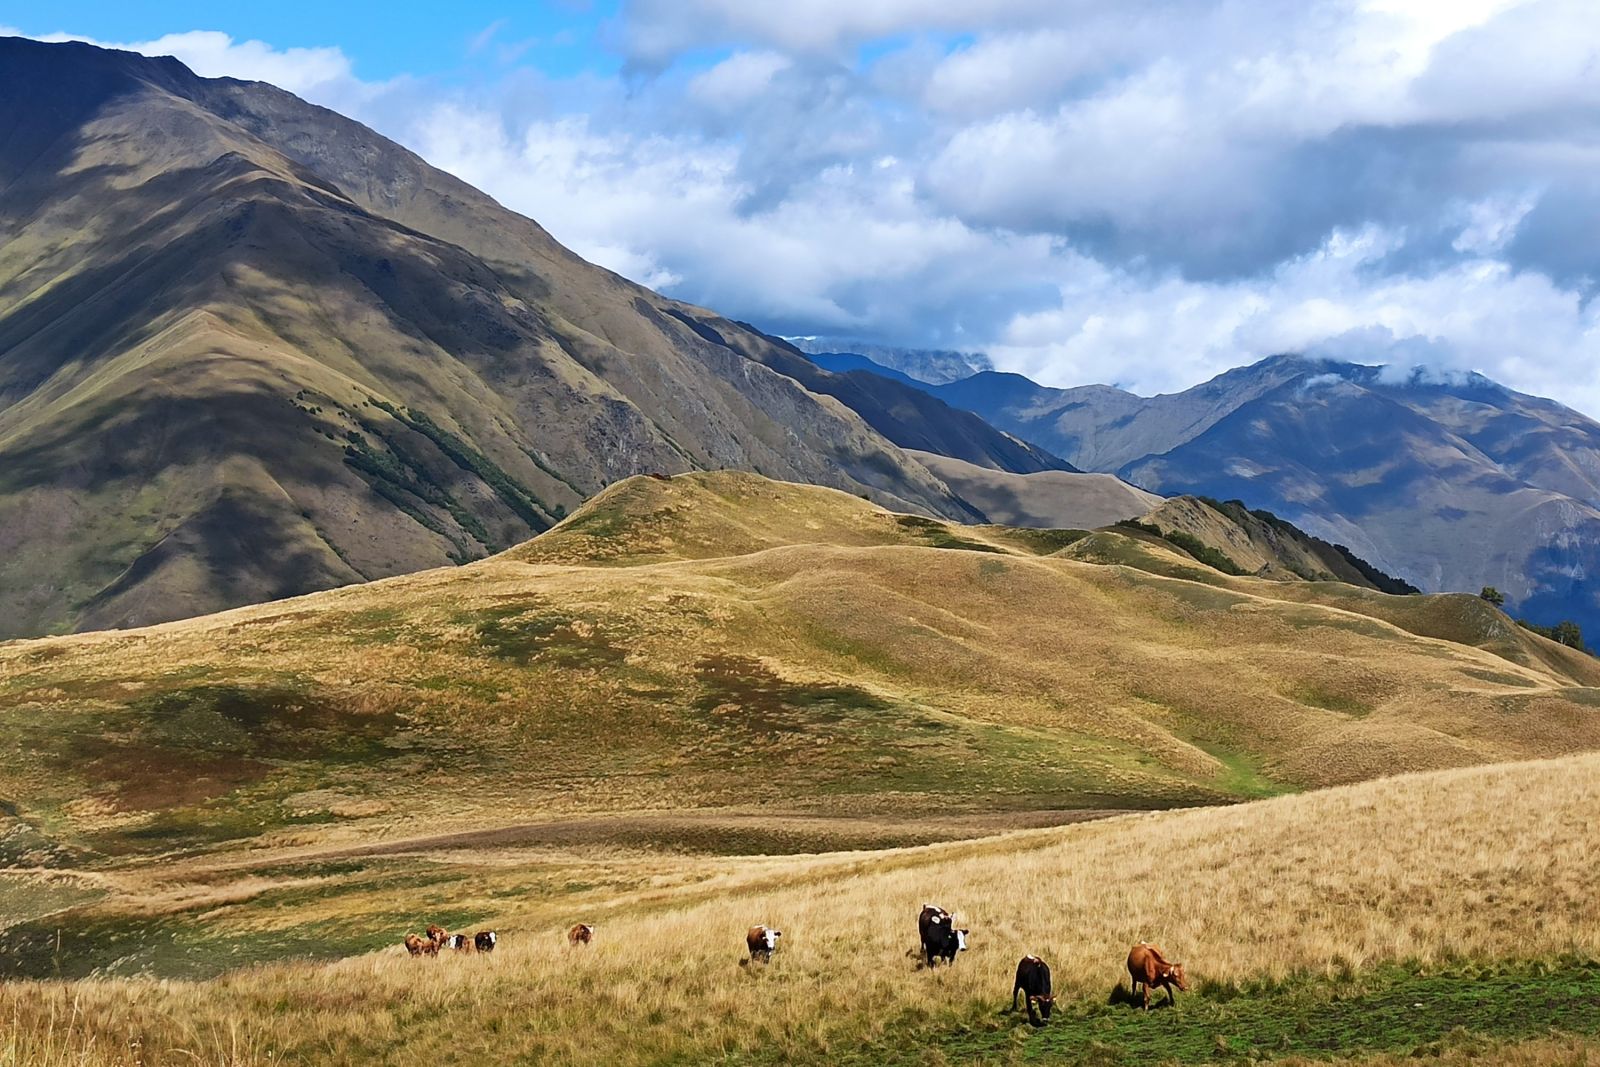 Kühe grassen friedlich vor weitsichtiger Berglandschaft, Georgien – Tuschetien